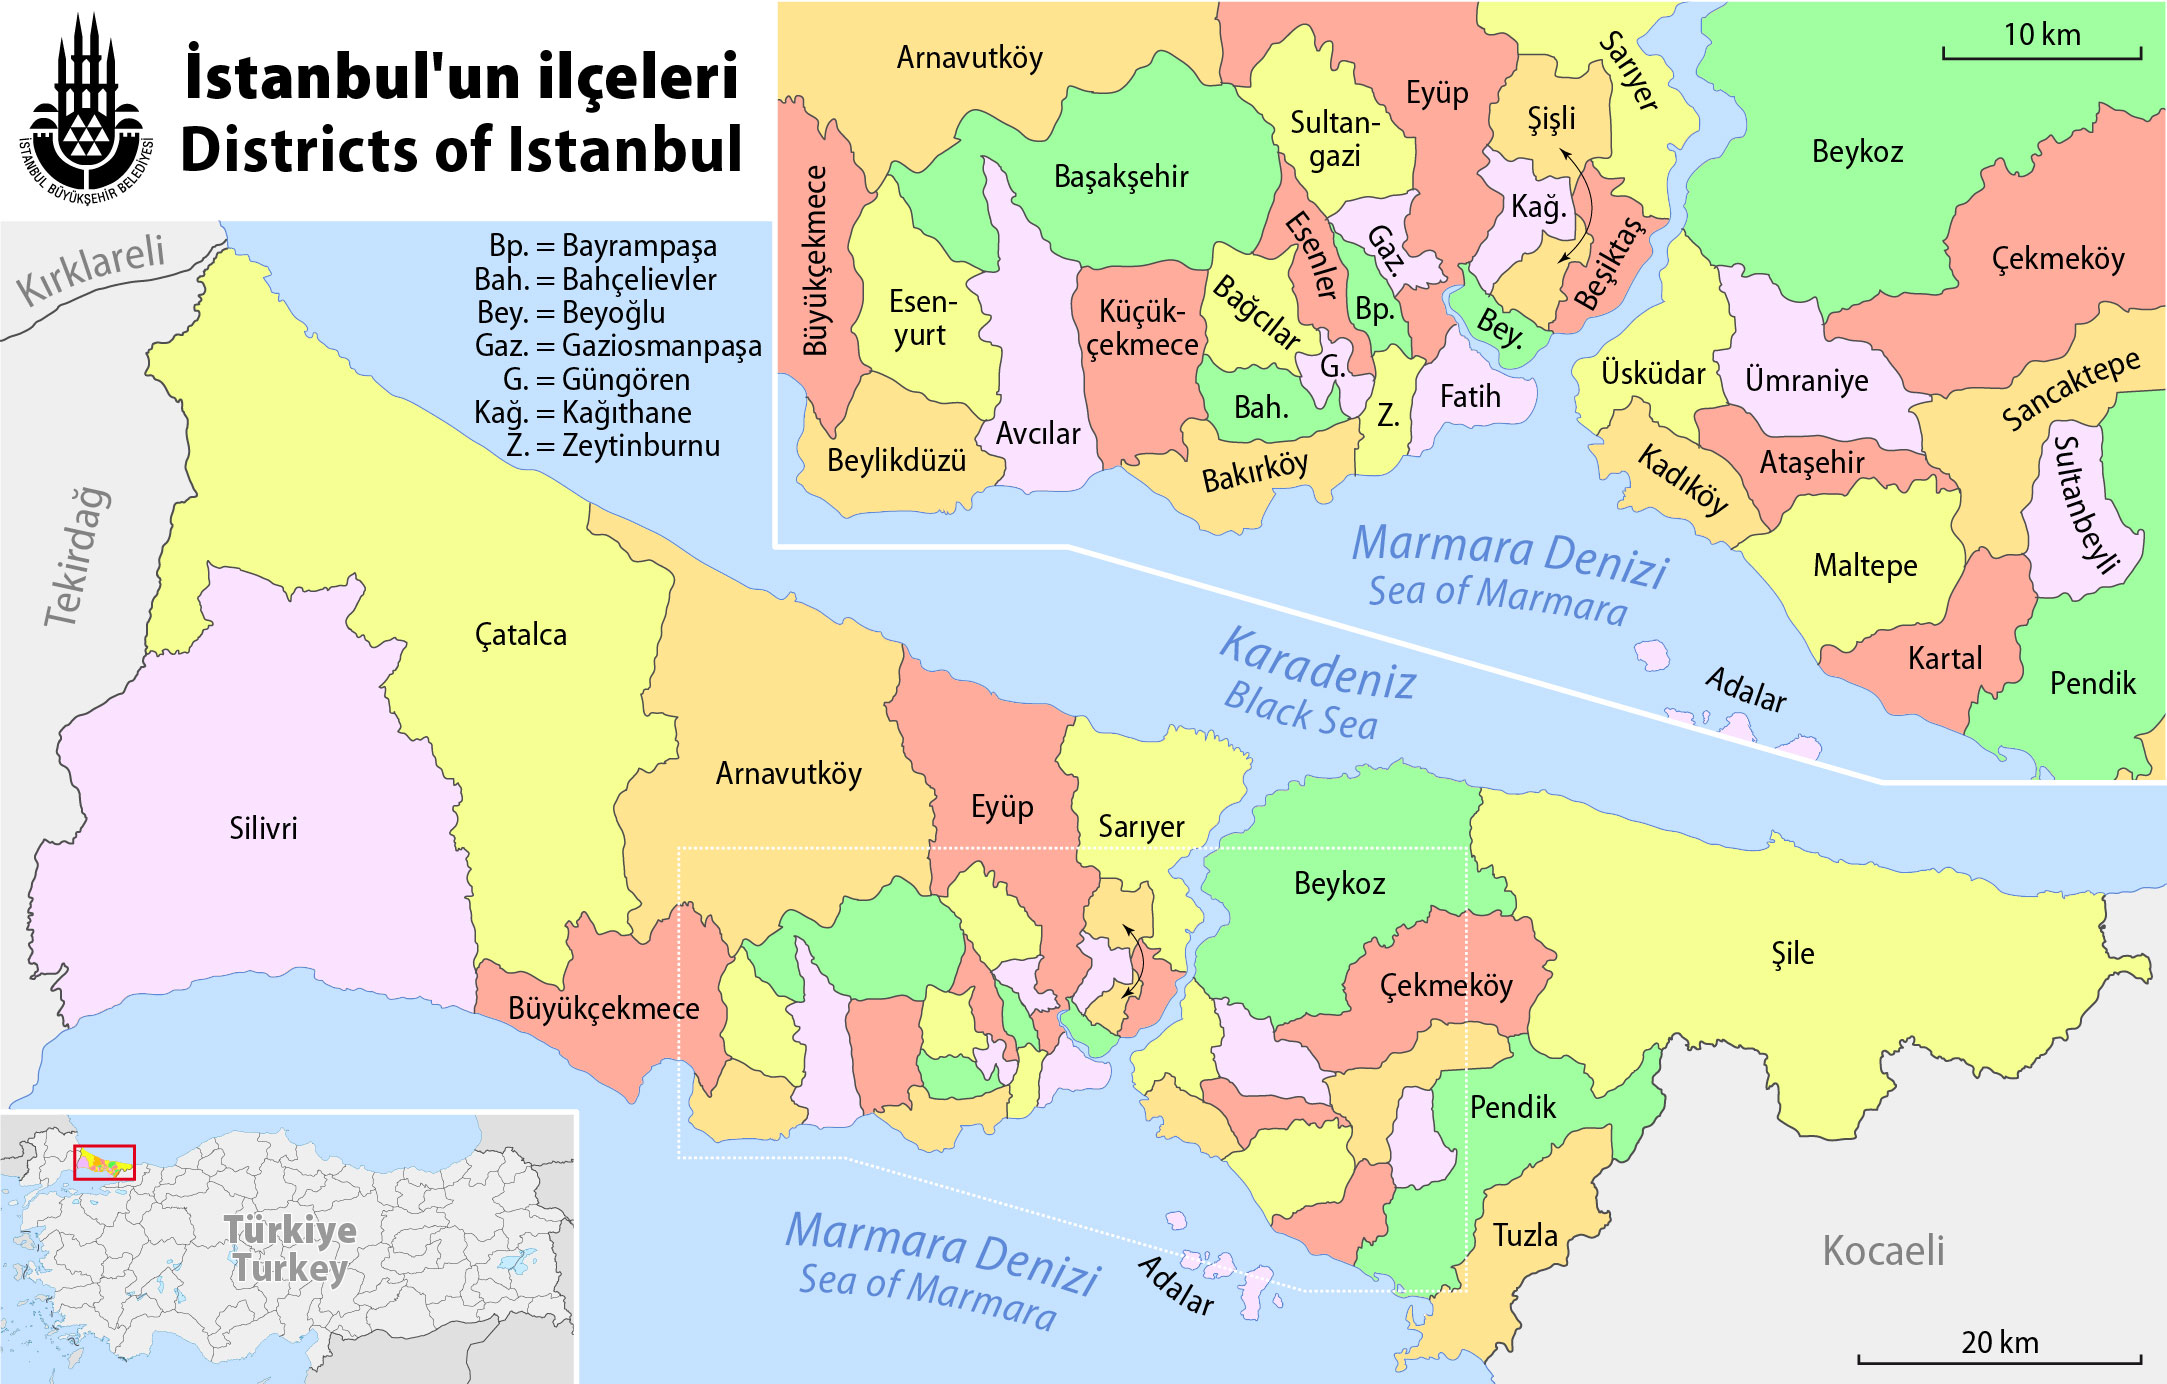 istanbul ili 2017 yili cevre durum raporu